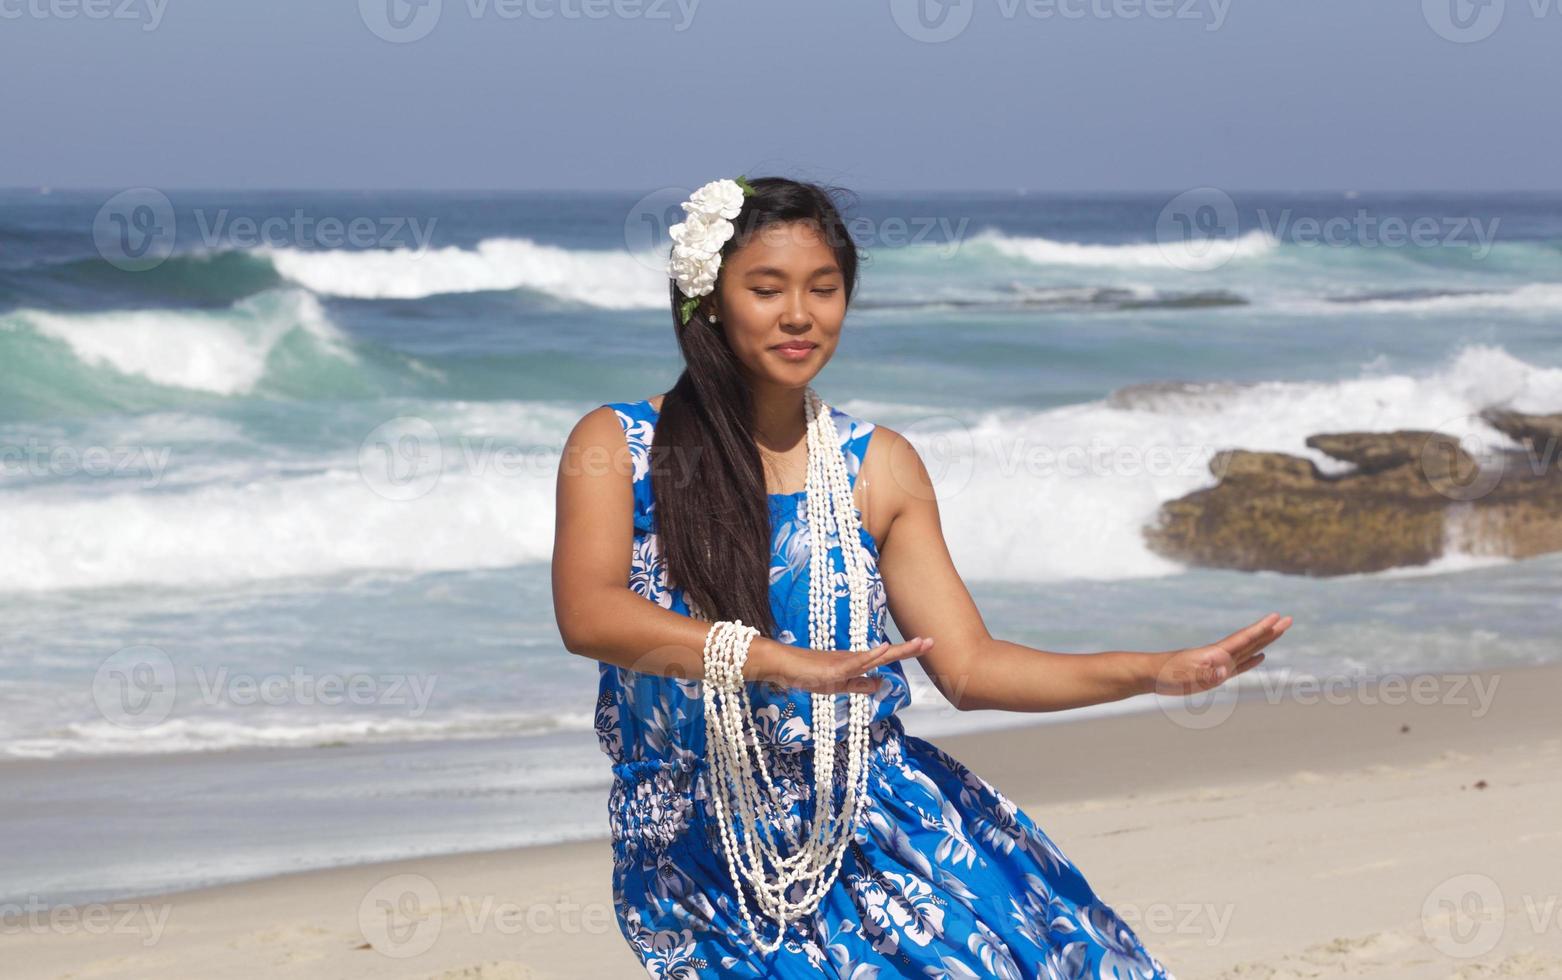 belle adolescente danseuse de hula sur une plage déserte photo